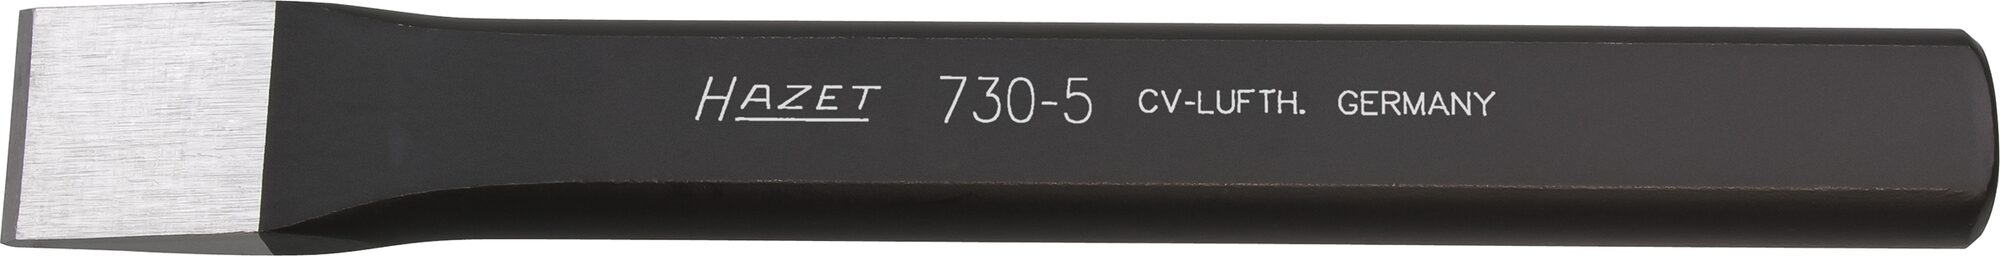 HAZET Flachmeißel 730-7 ∙ 25 mm